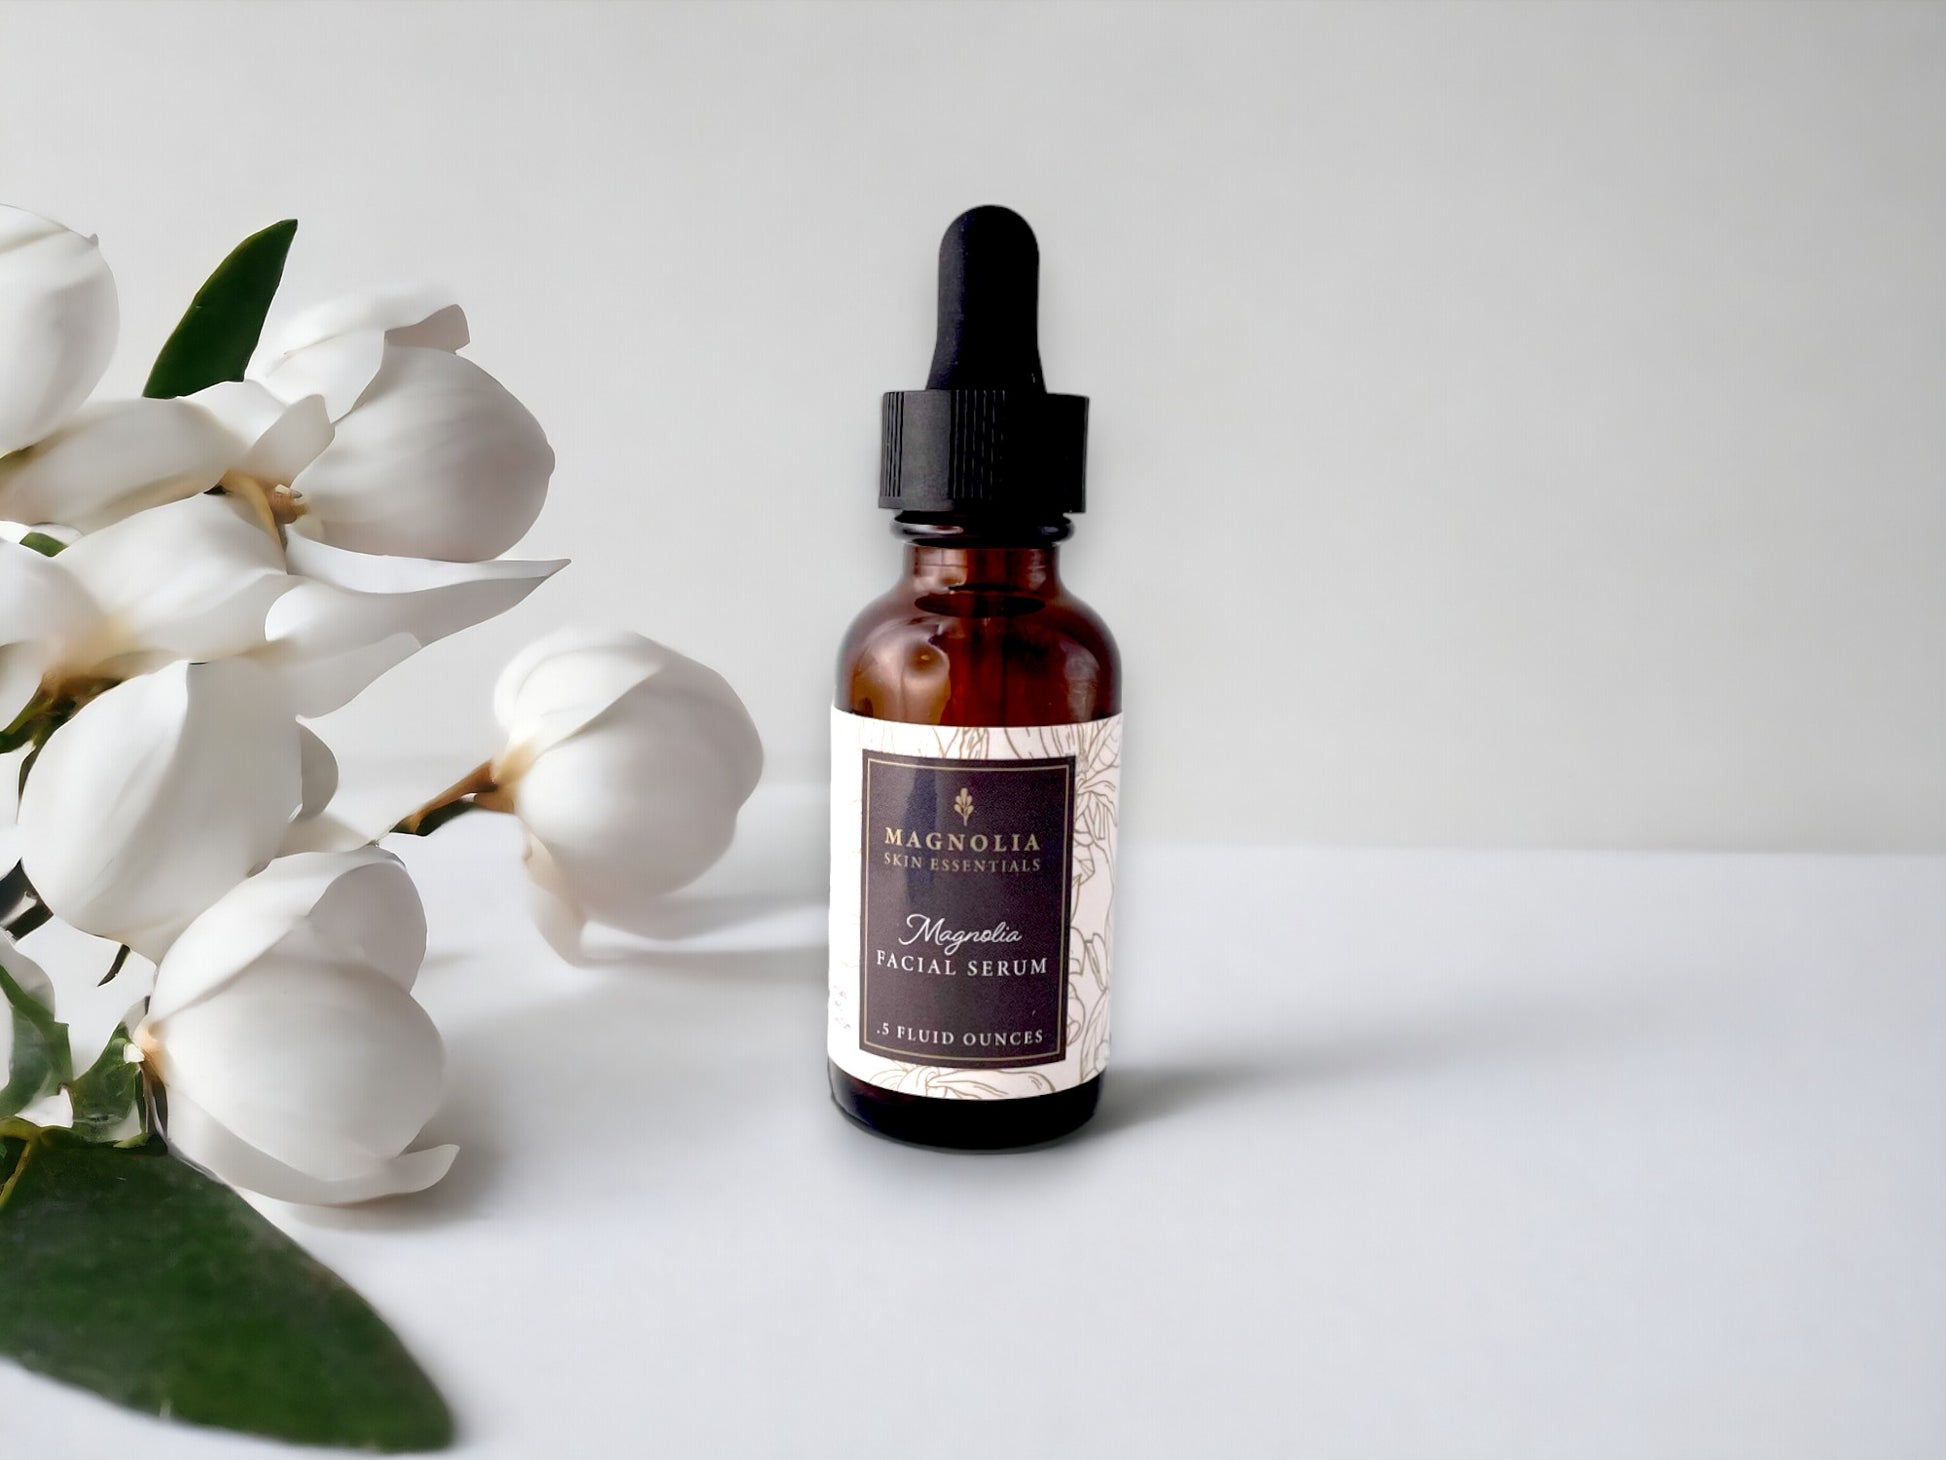 Magnolia Facial Serum – Magnolia Skin Essentials